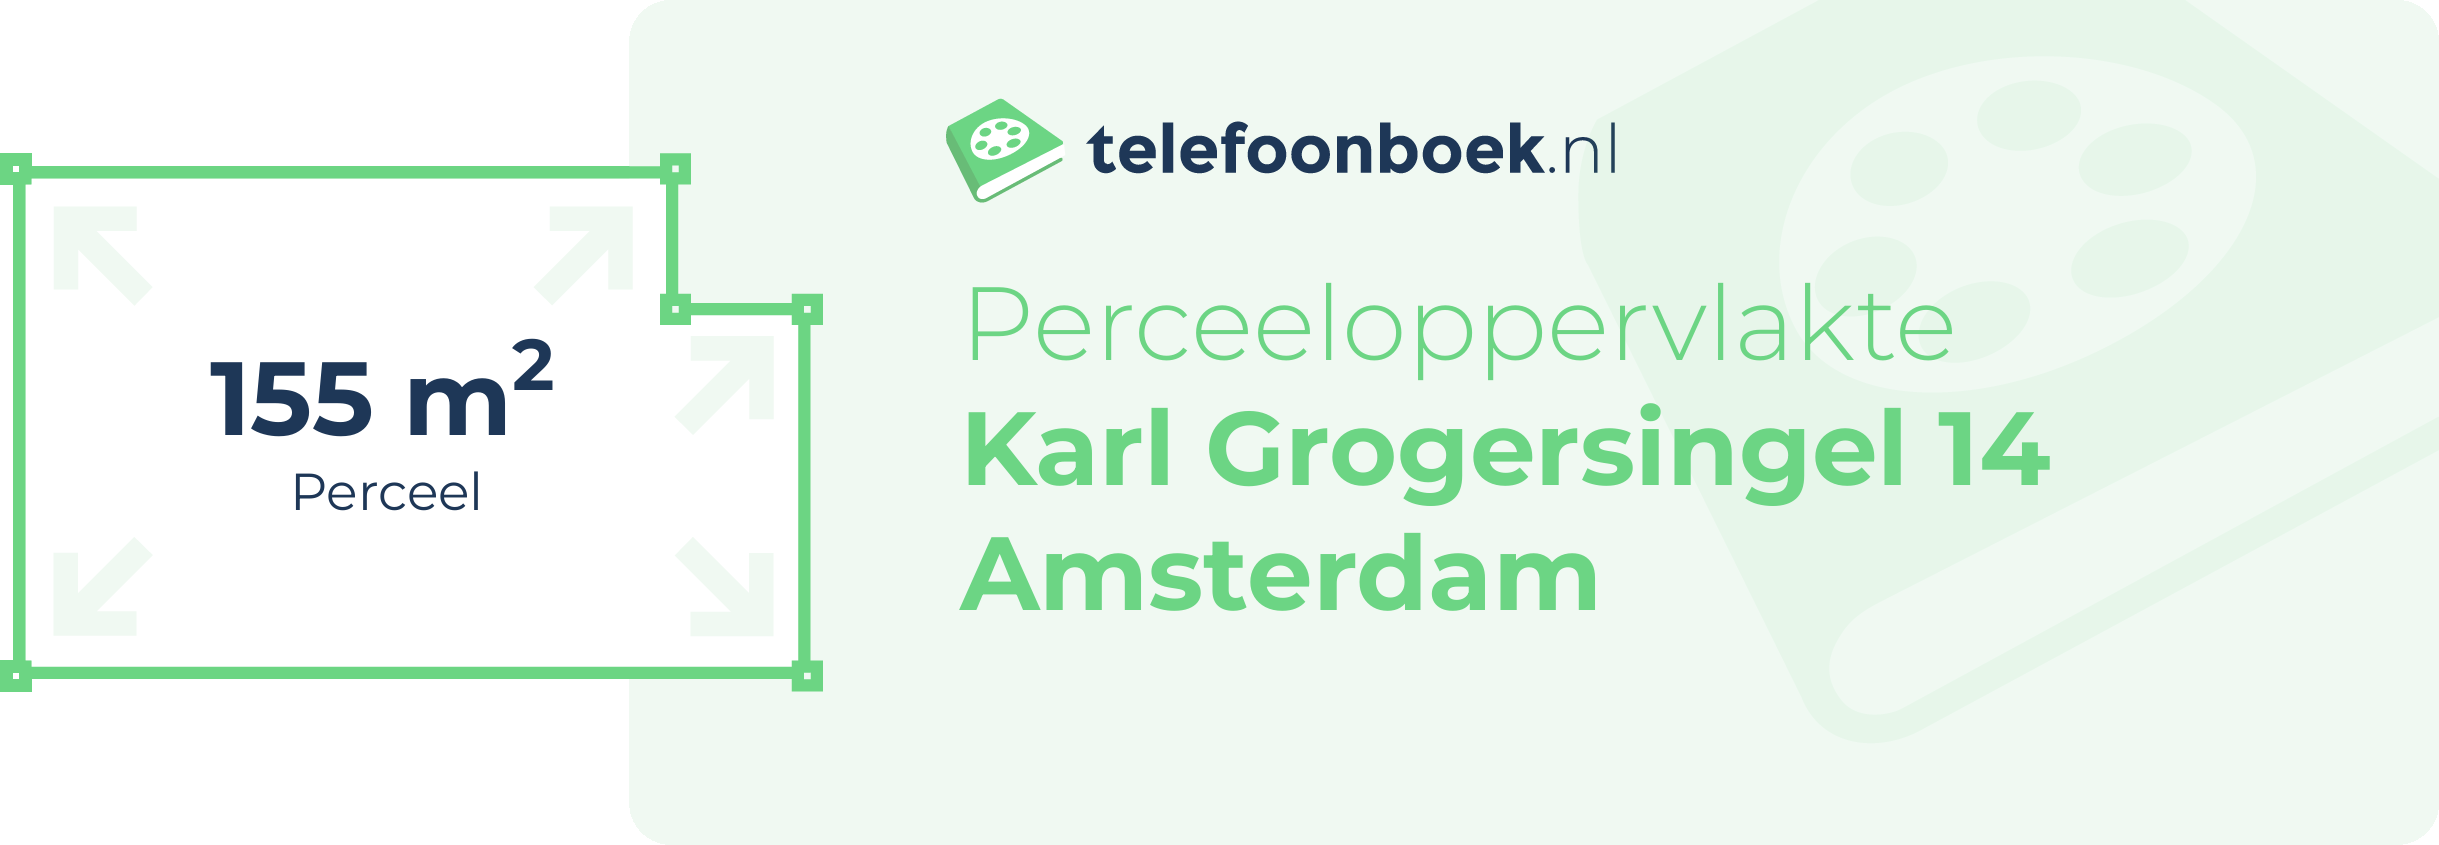 Perceeloppervlakte Karl Grogersingel 14 Amsterdam